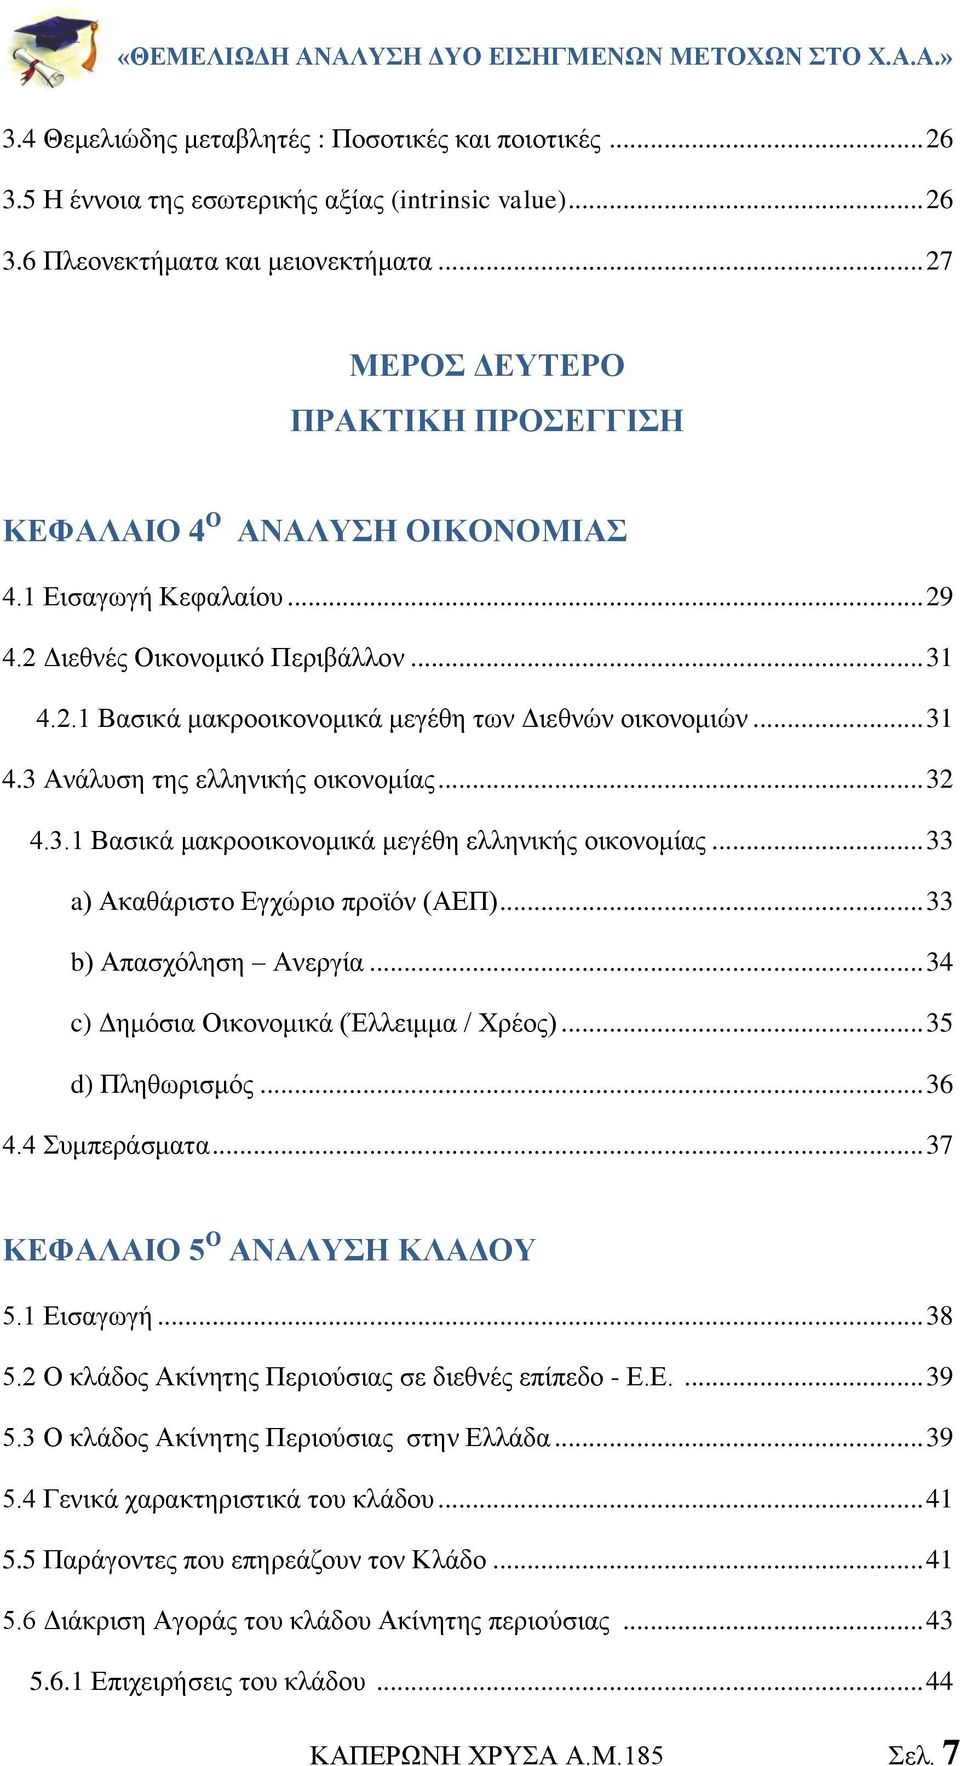 .. 31 4.3 Ανάλυση της ελληνικής οικονομίας... 32 4.3.1 Βασικά μακροοικονομικά μεγέθη ελληνικής οικονομίας... 33 a) Ακαθάριστο Εγχώριο προϊόν (ΑΕΠ)... 33 b) Απασχόληση Ανεργία.